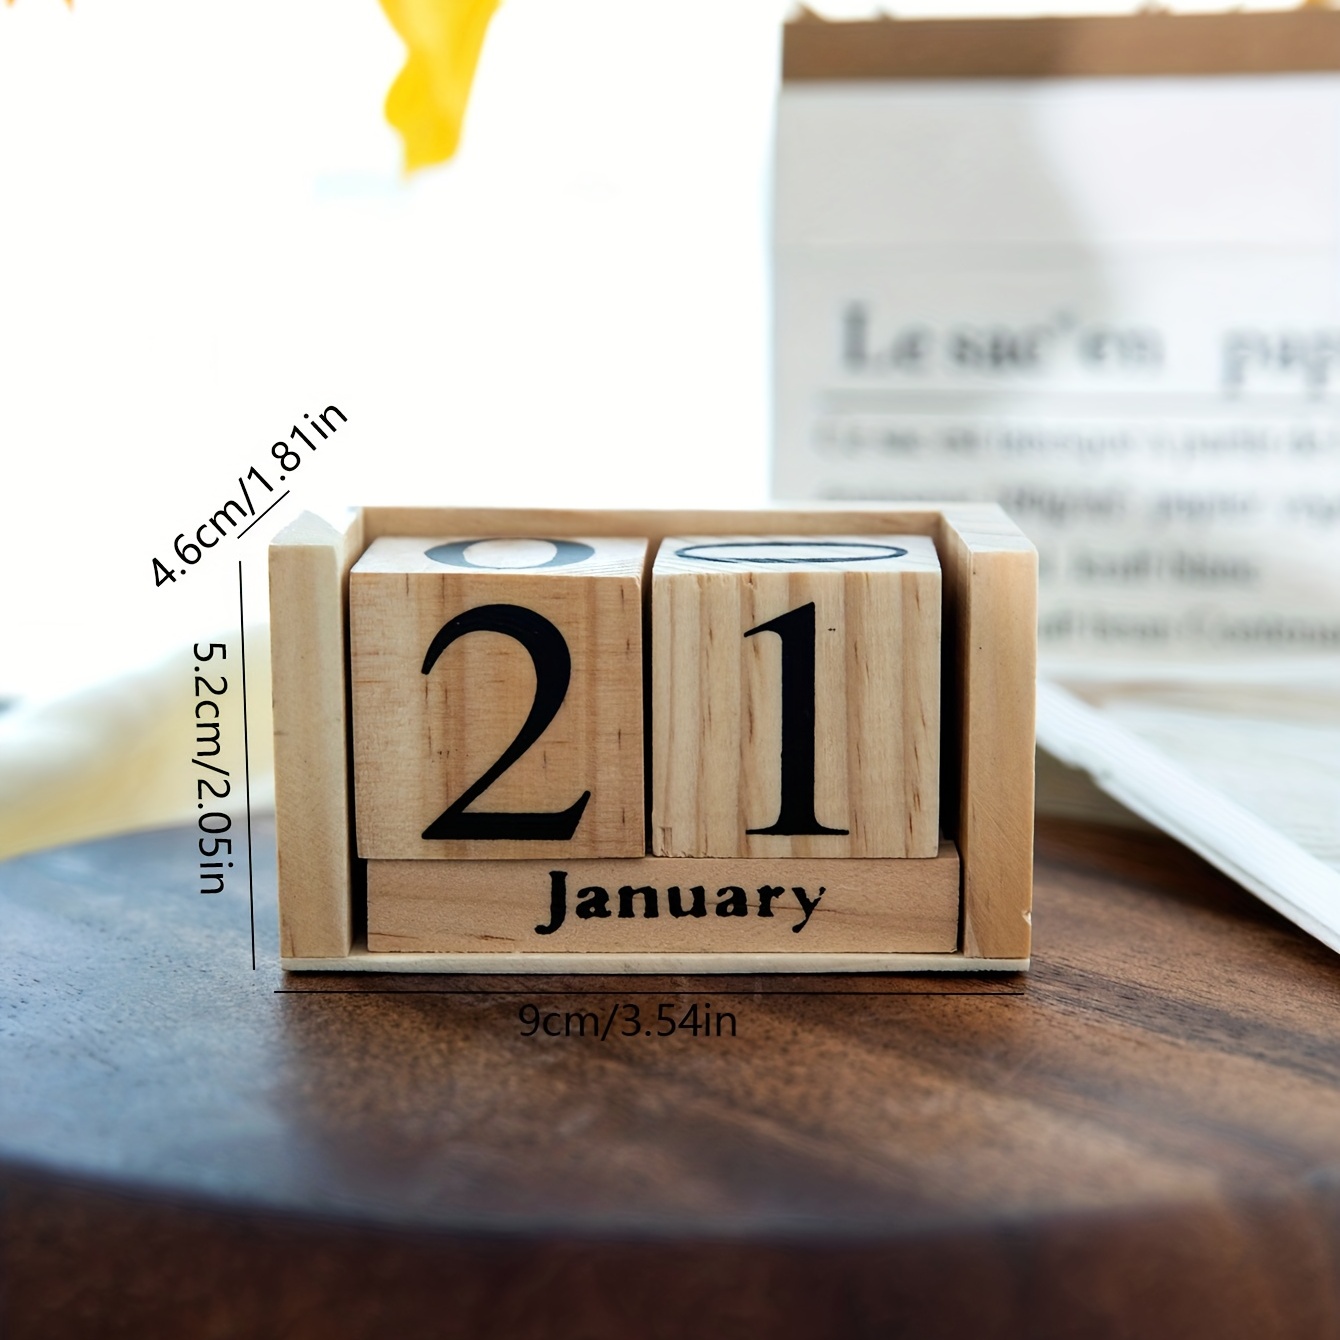  Bloques de calendario perpetuo de madera personalizados,  calendario de escritorio perpetuo grabado personalizado, letrero de madera  inspirador para cumpleaños, aniversario, decoración del hogar y la oficina  : Productos de Oficina